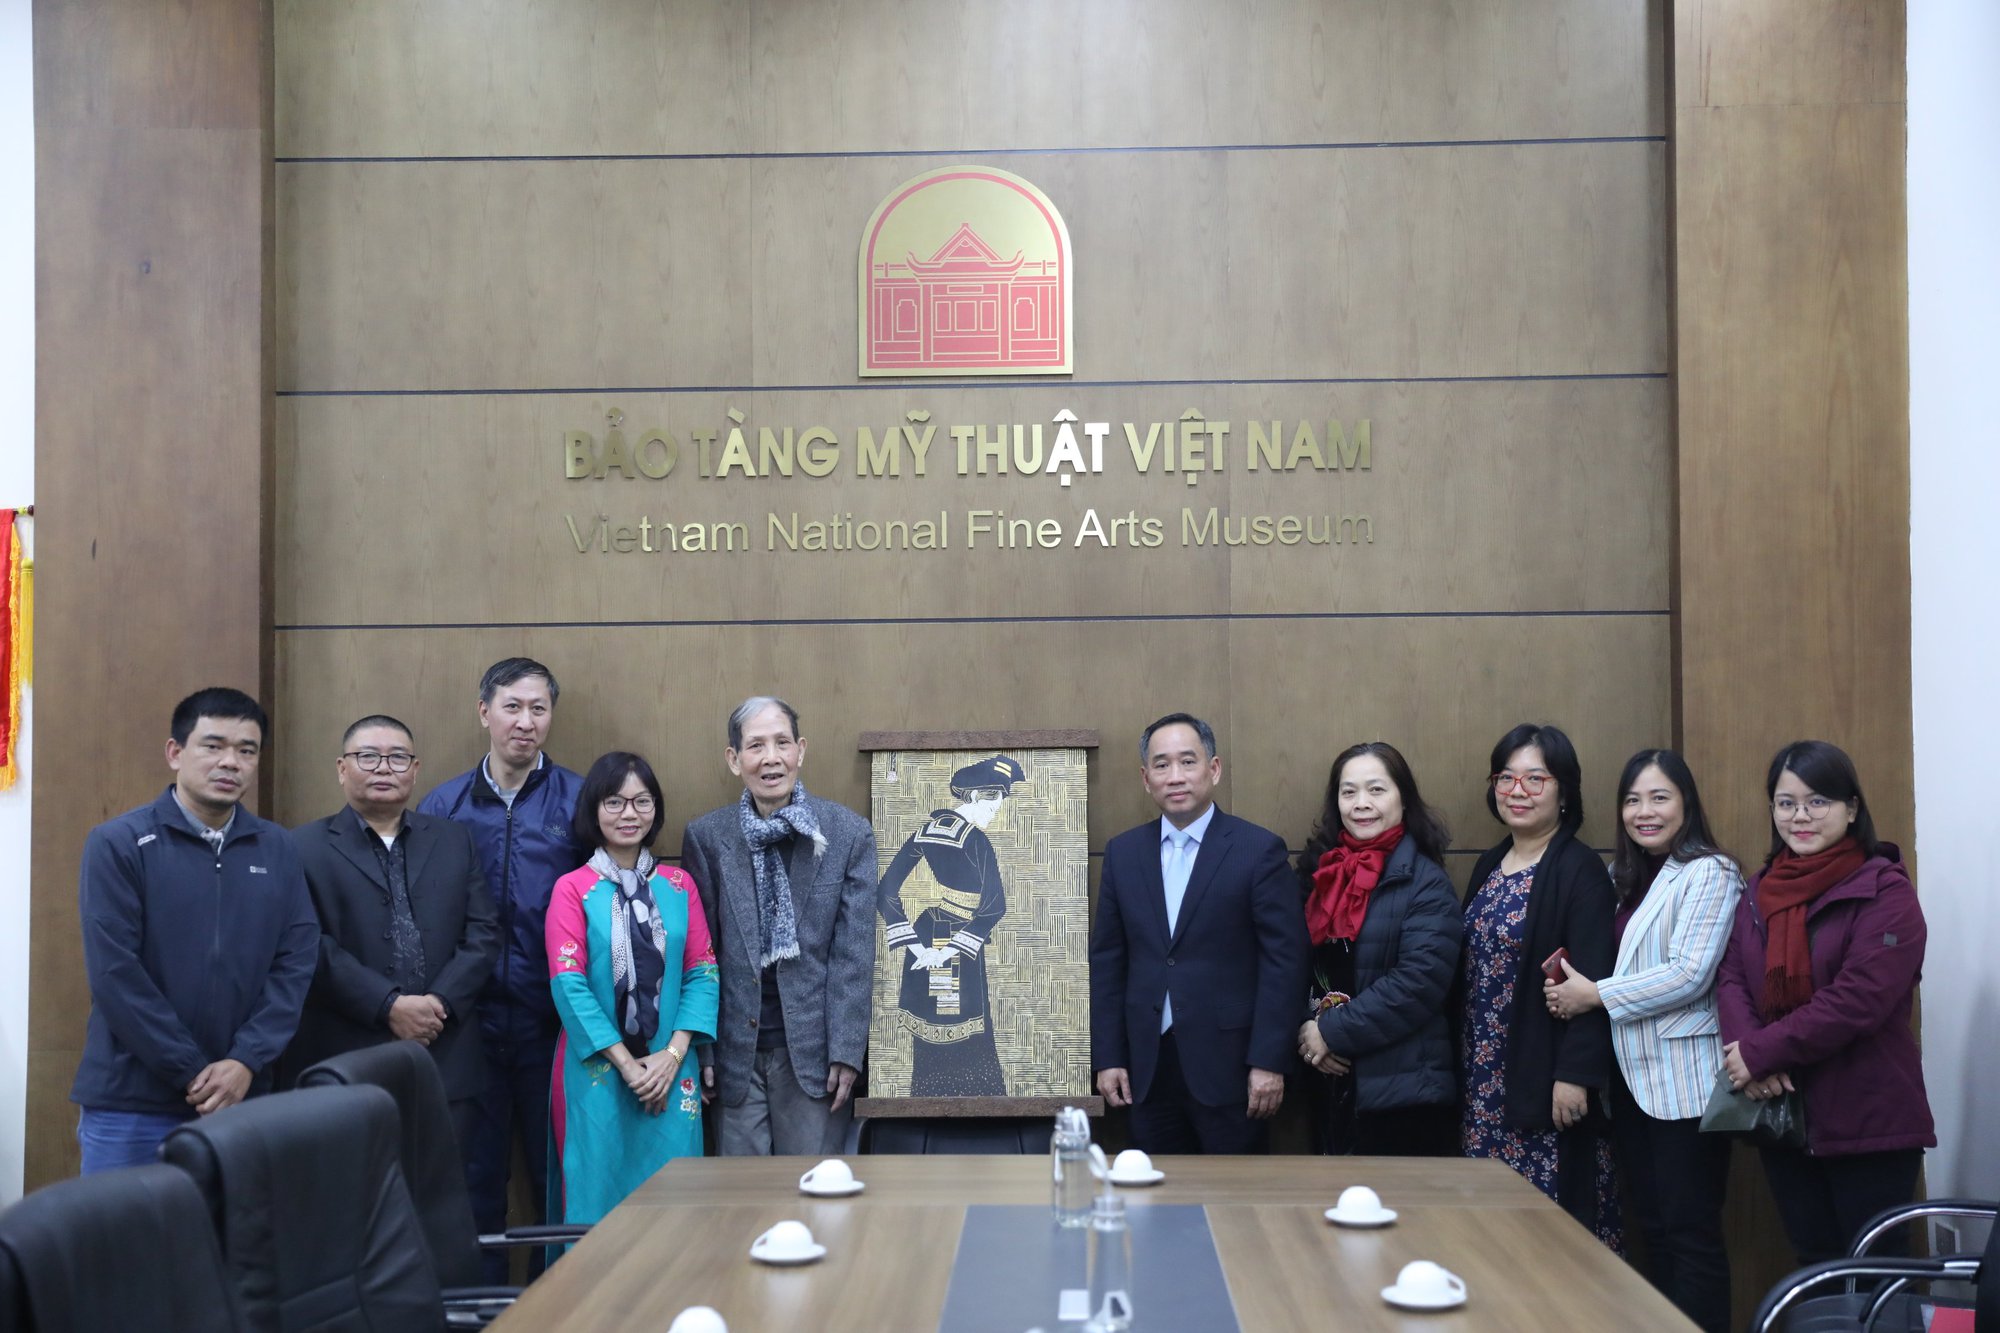 Bảo tàng Mỹ thuật Việt Nam tiếp nhận hai tác phẩm nghệ thuật từ châu Âu trở về - Ảnh 2.